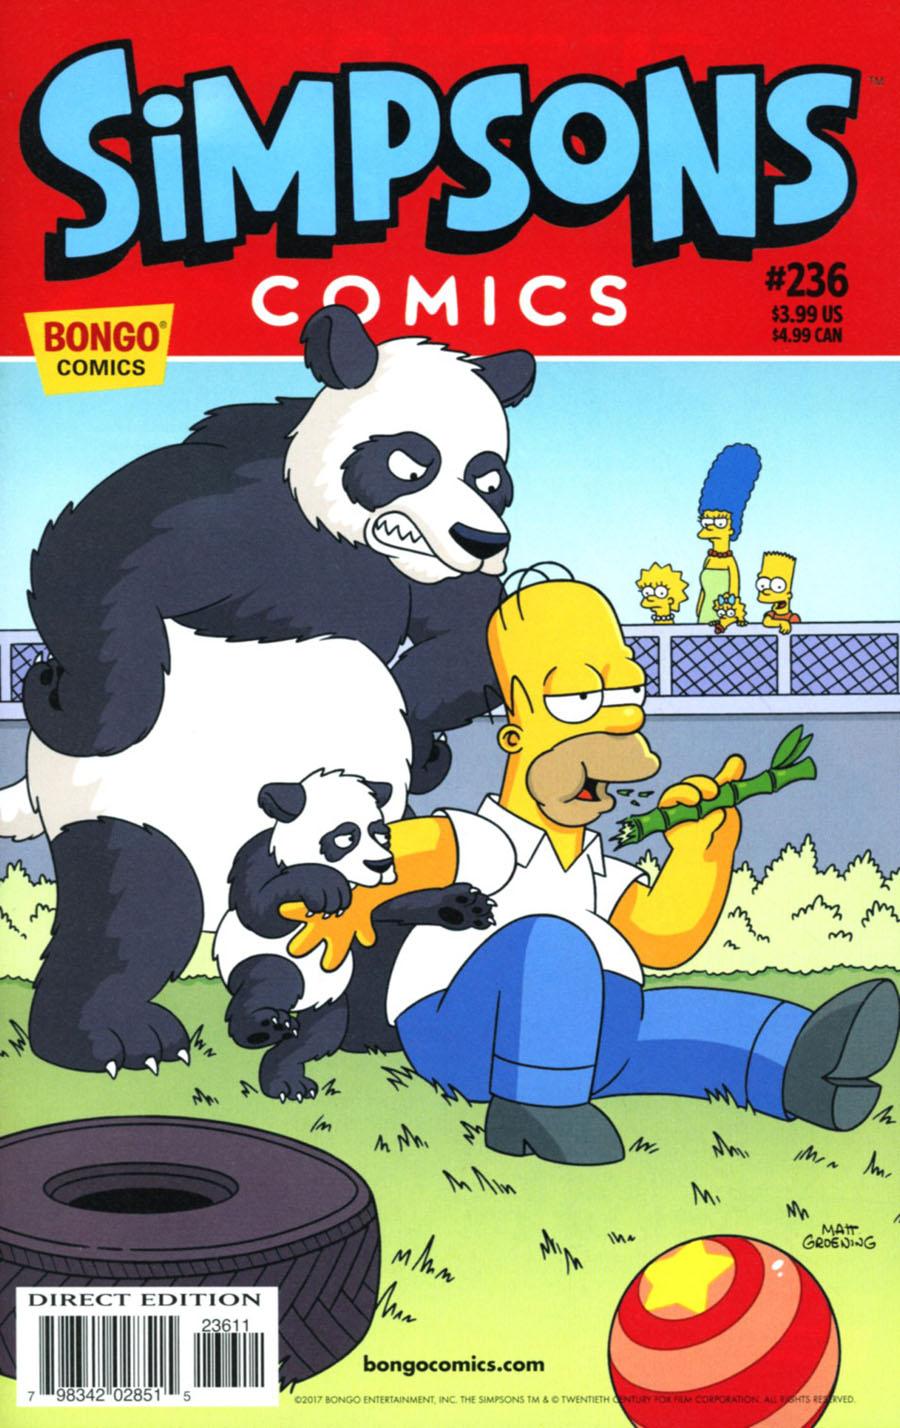 Simpsons Comics Vol. 1 #236